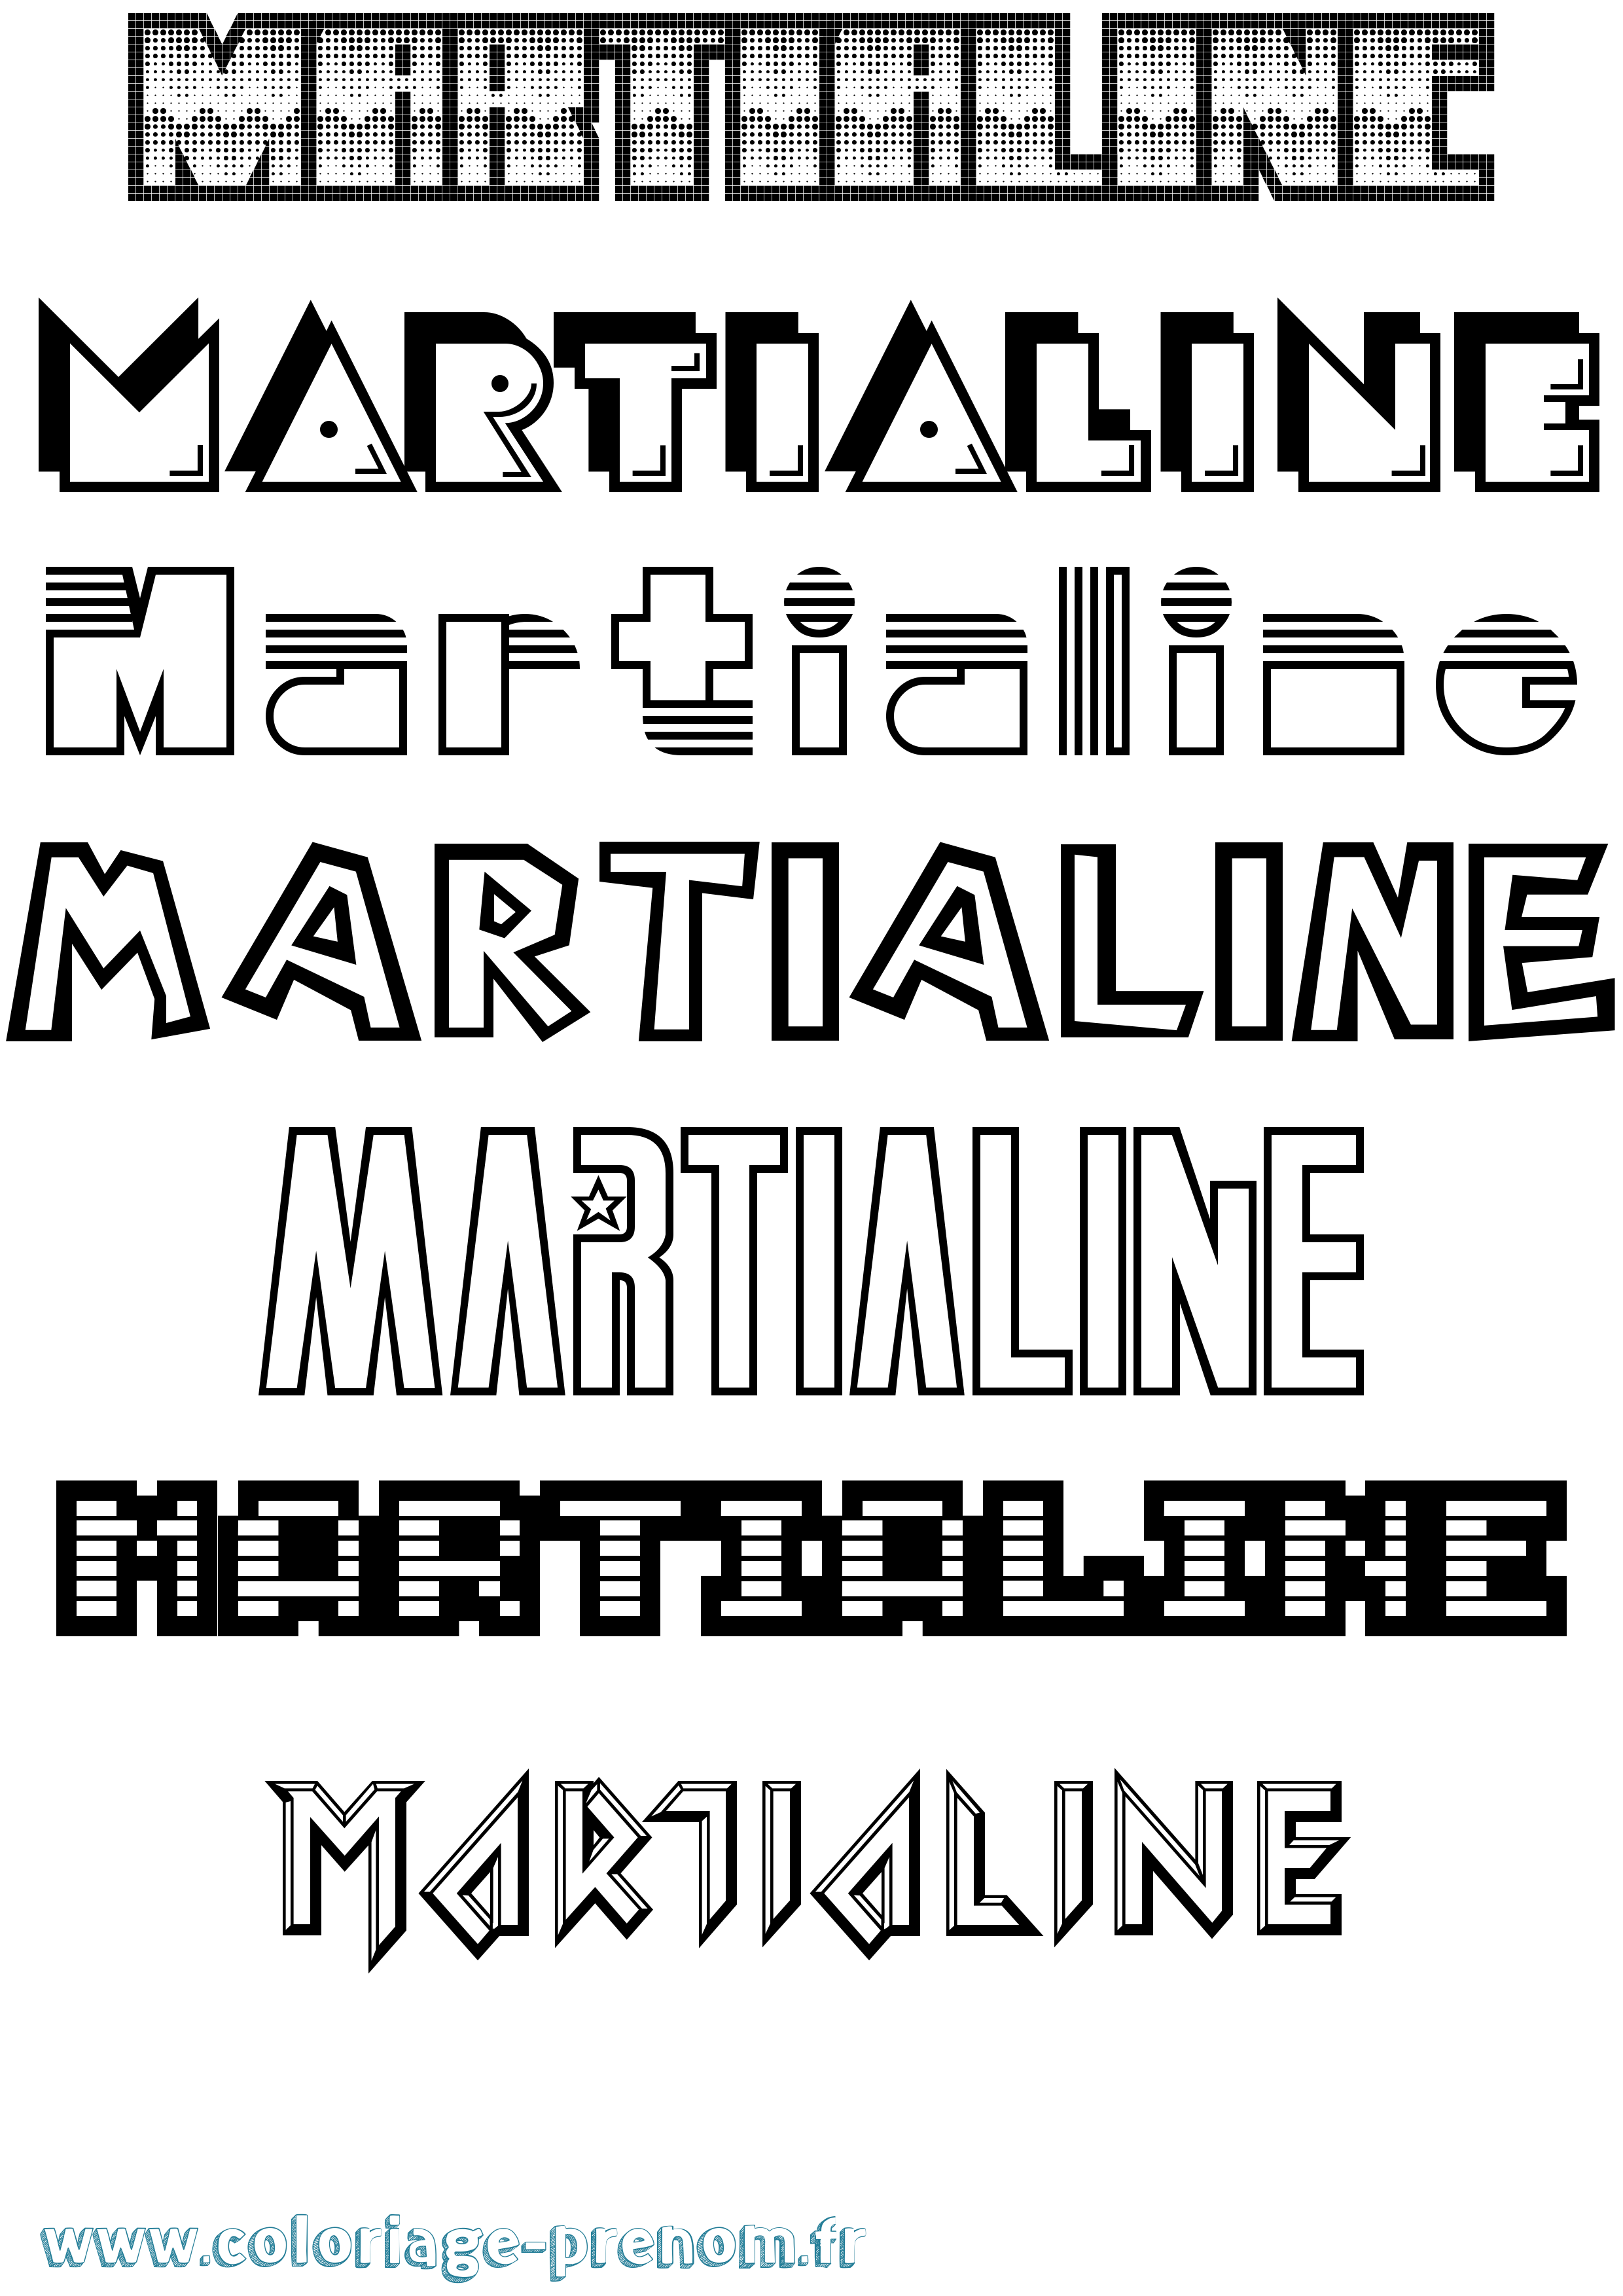 Coloriage prénom Martialine Jeux Vidéos